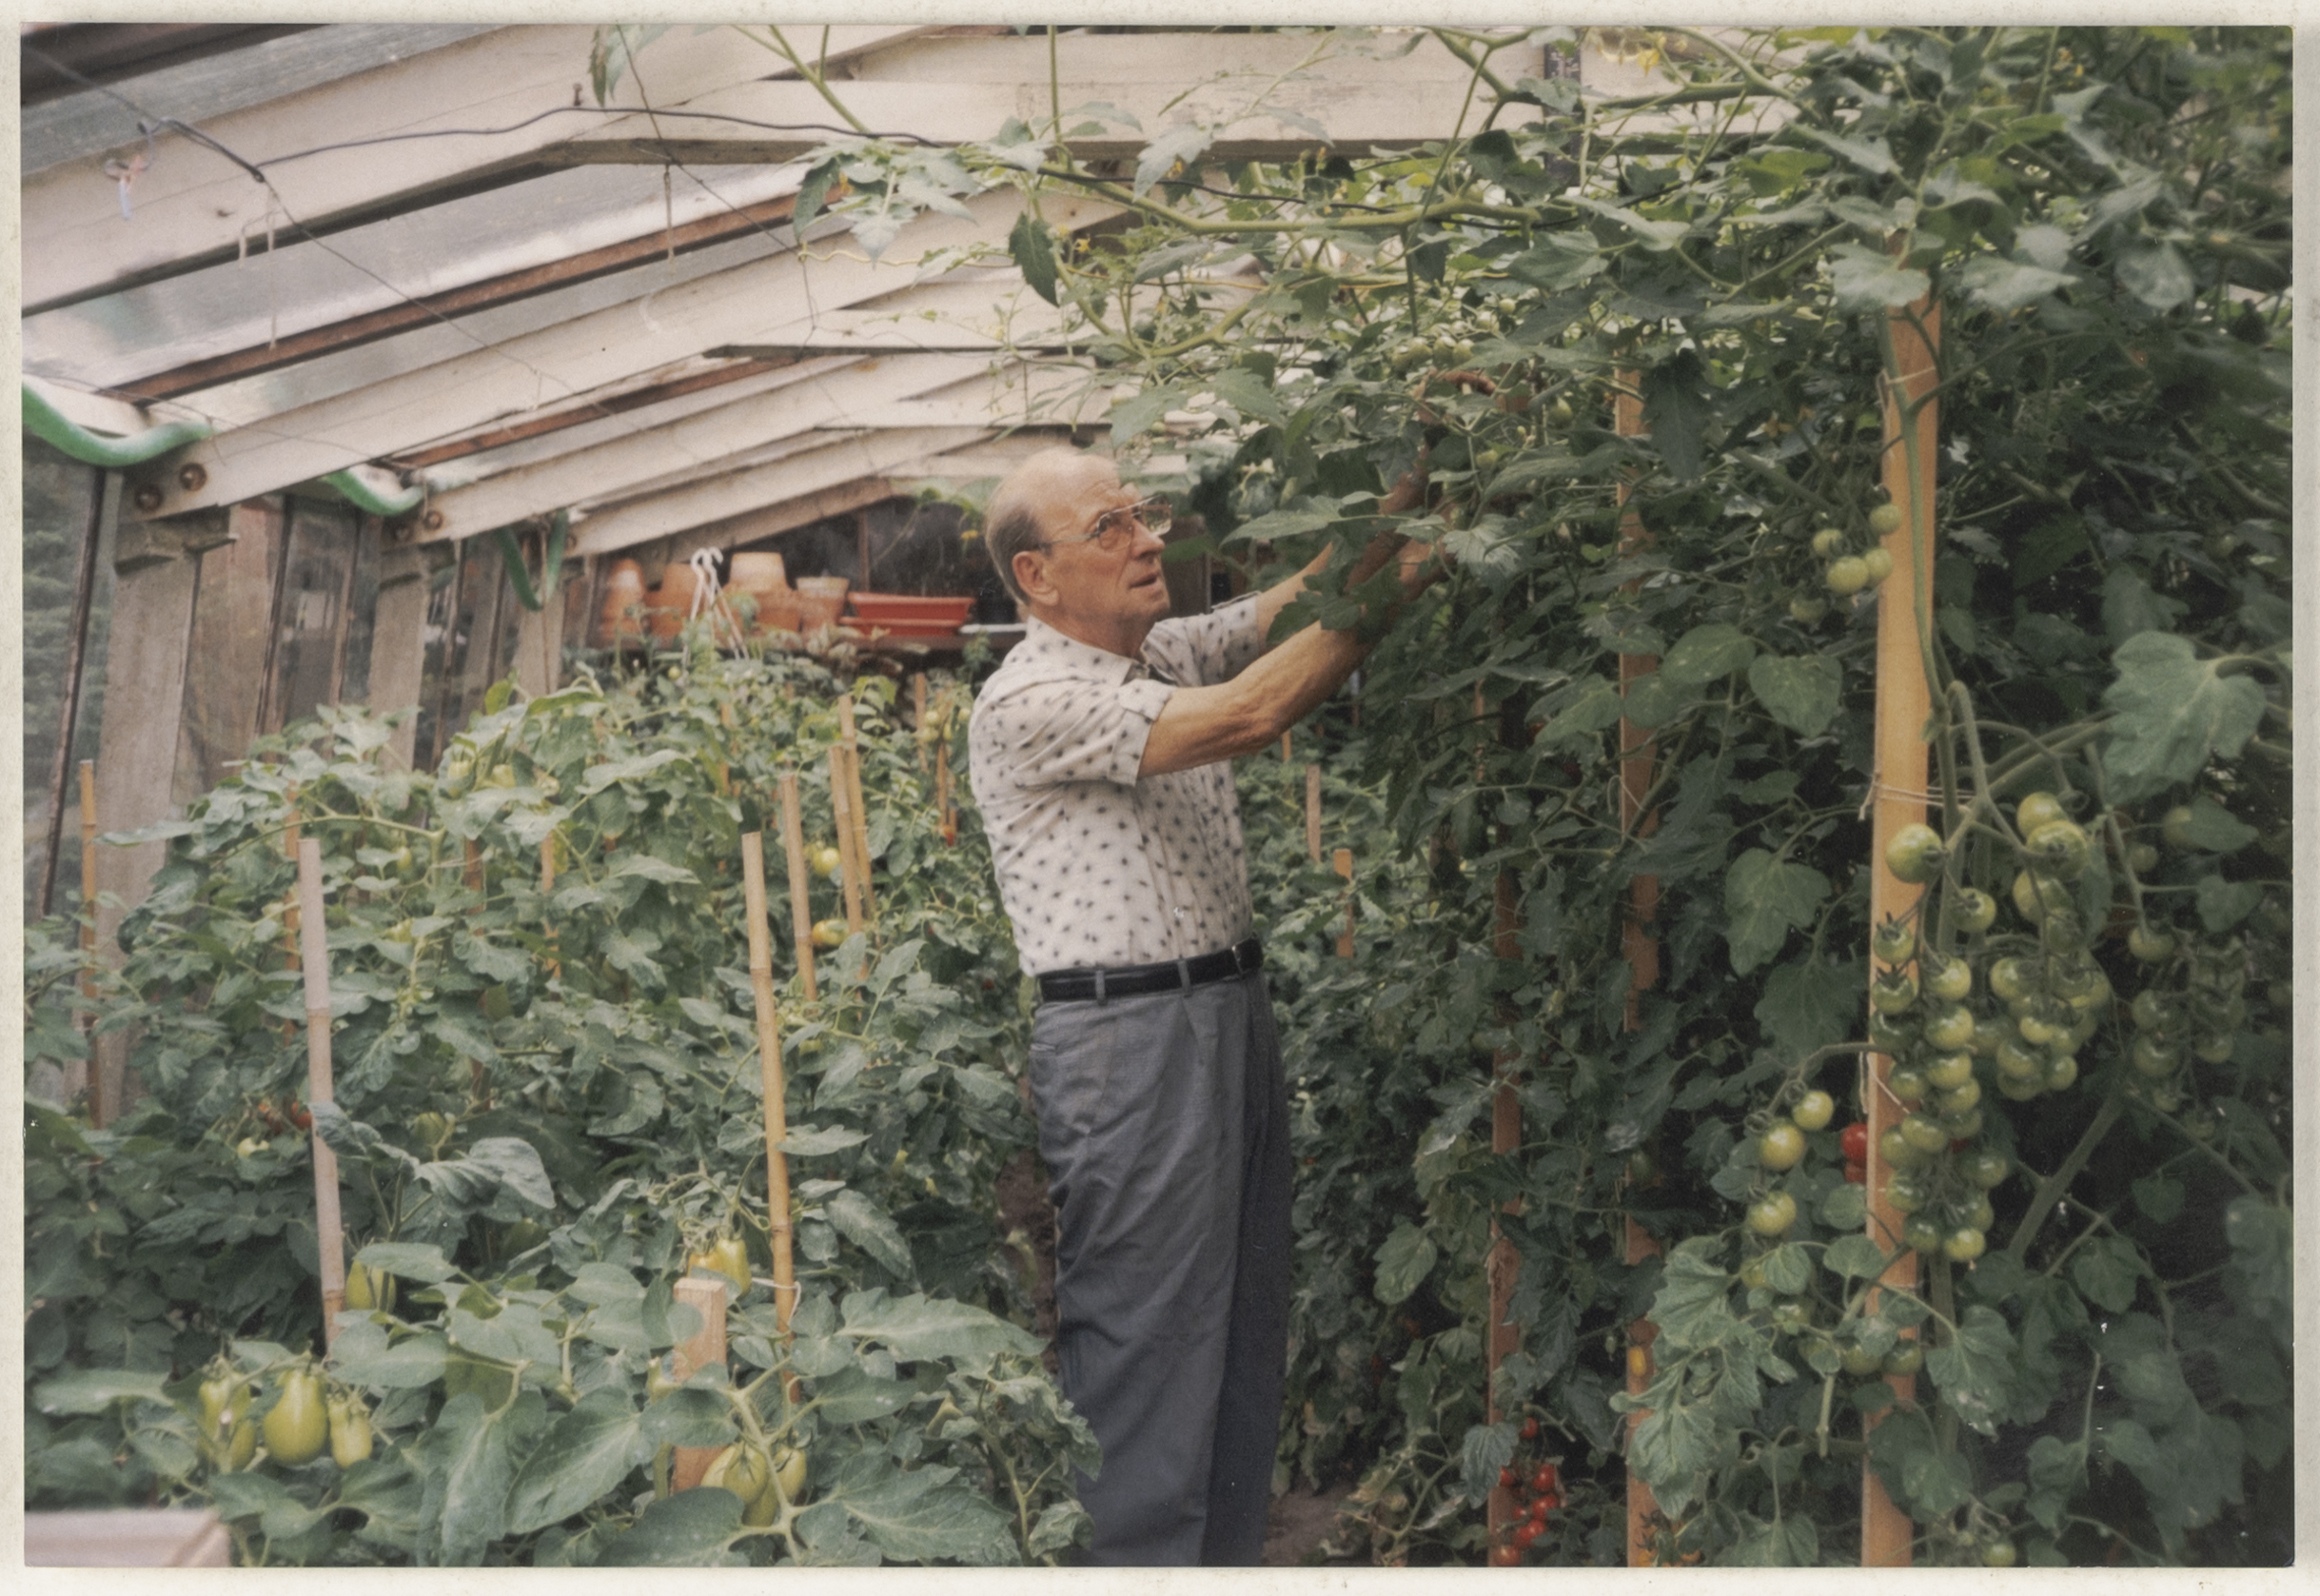 Een man verzorgt tomaten in een serre, Booischot, circa 1960 -2000 © collectie Huis van Alijn.